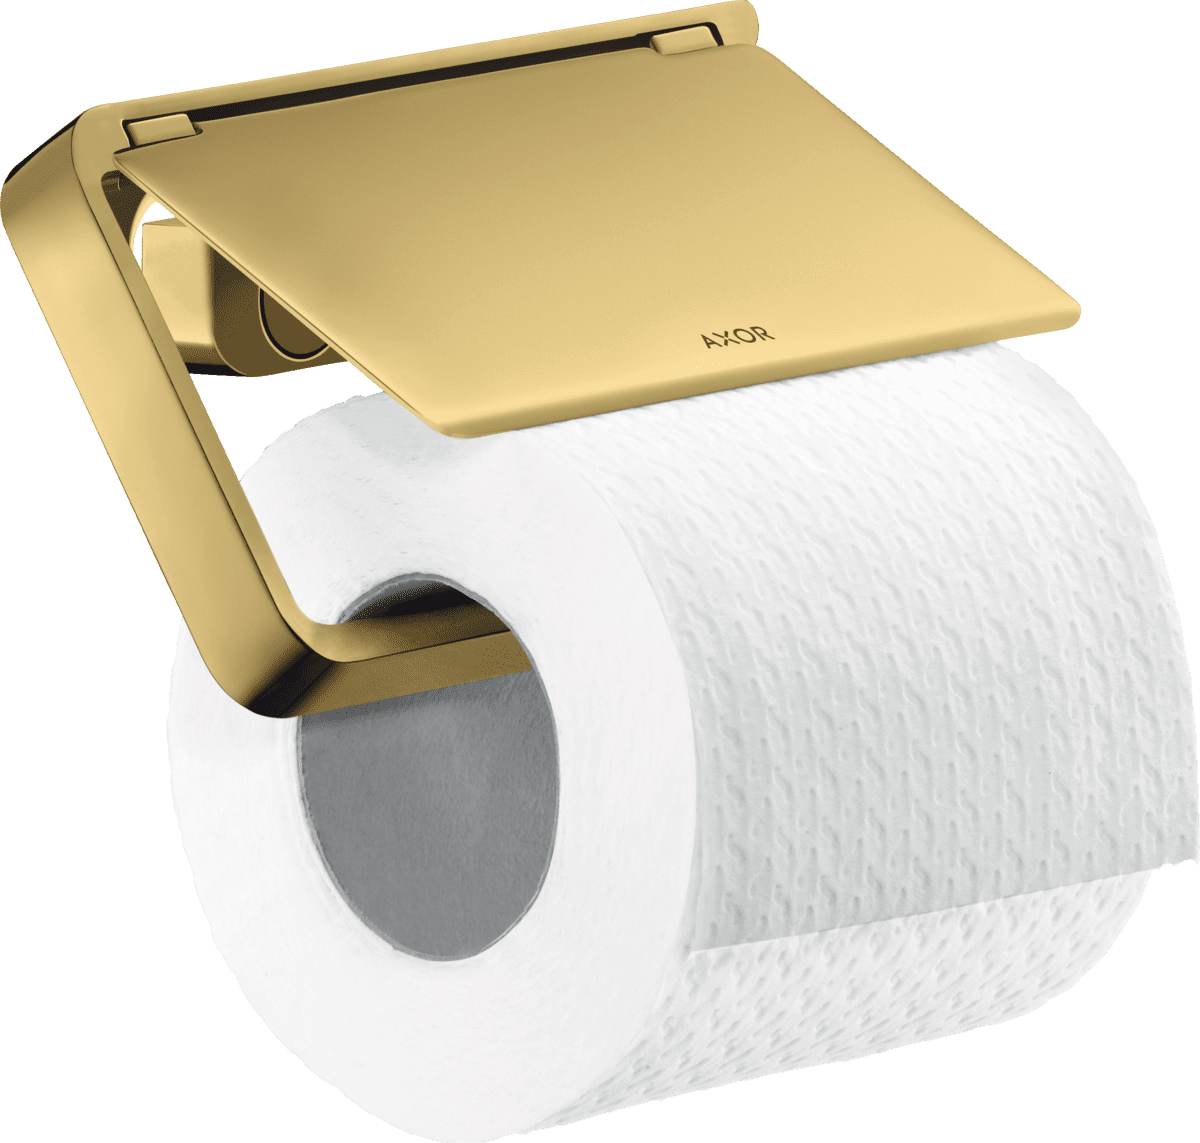 εικόνα του HANSGROHE AXOR Universal Softsquare Toilet paper holder with cover #42836990 - Polished Gold Optic